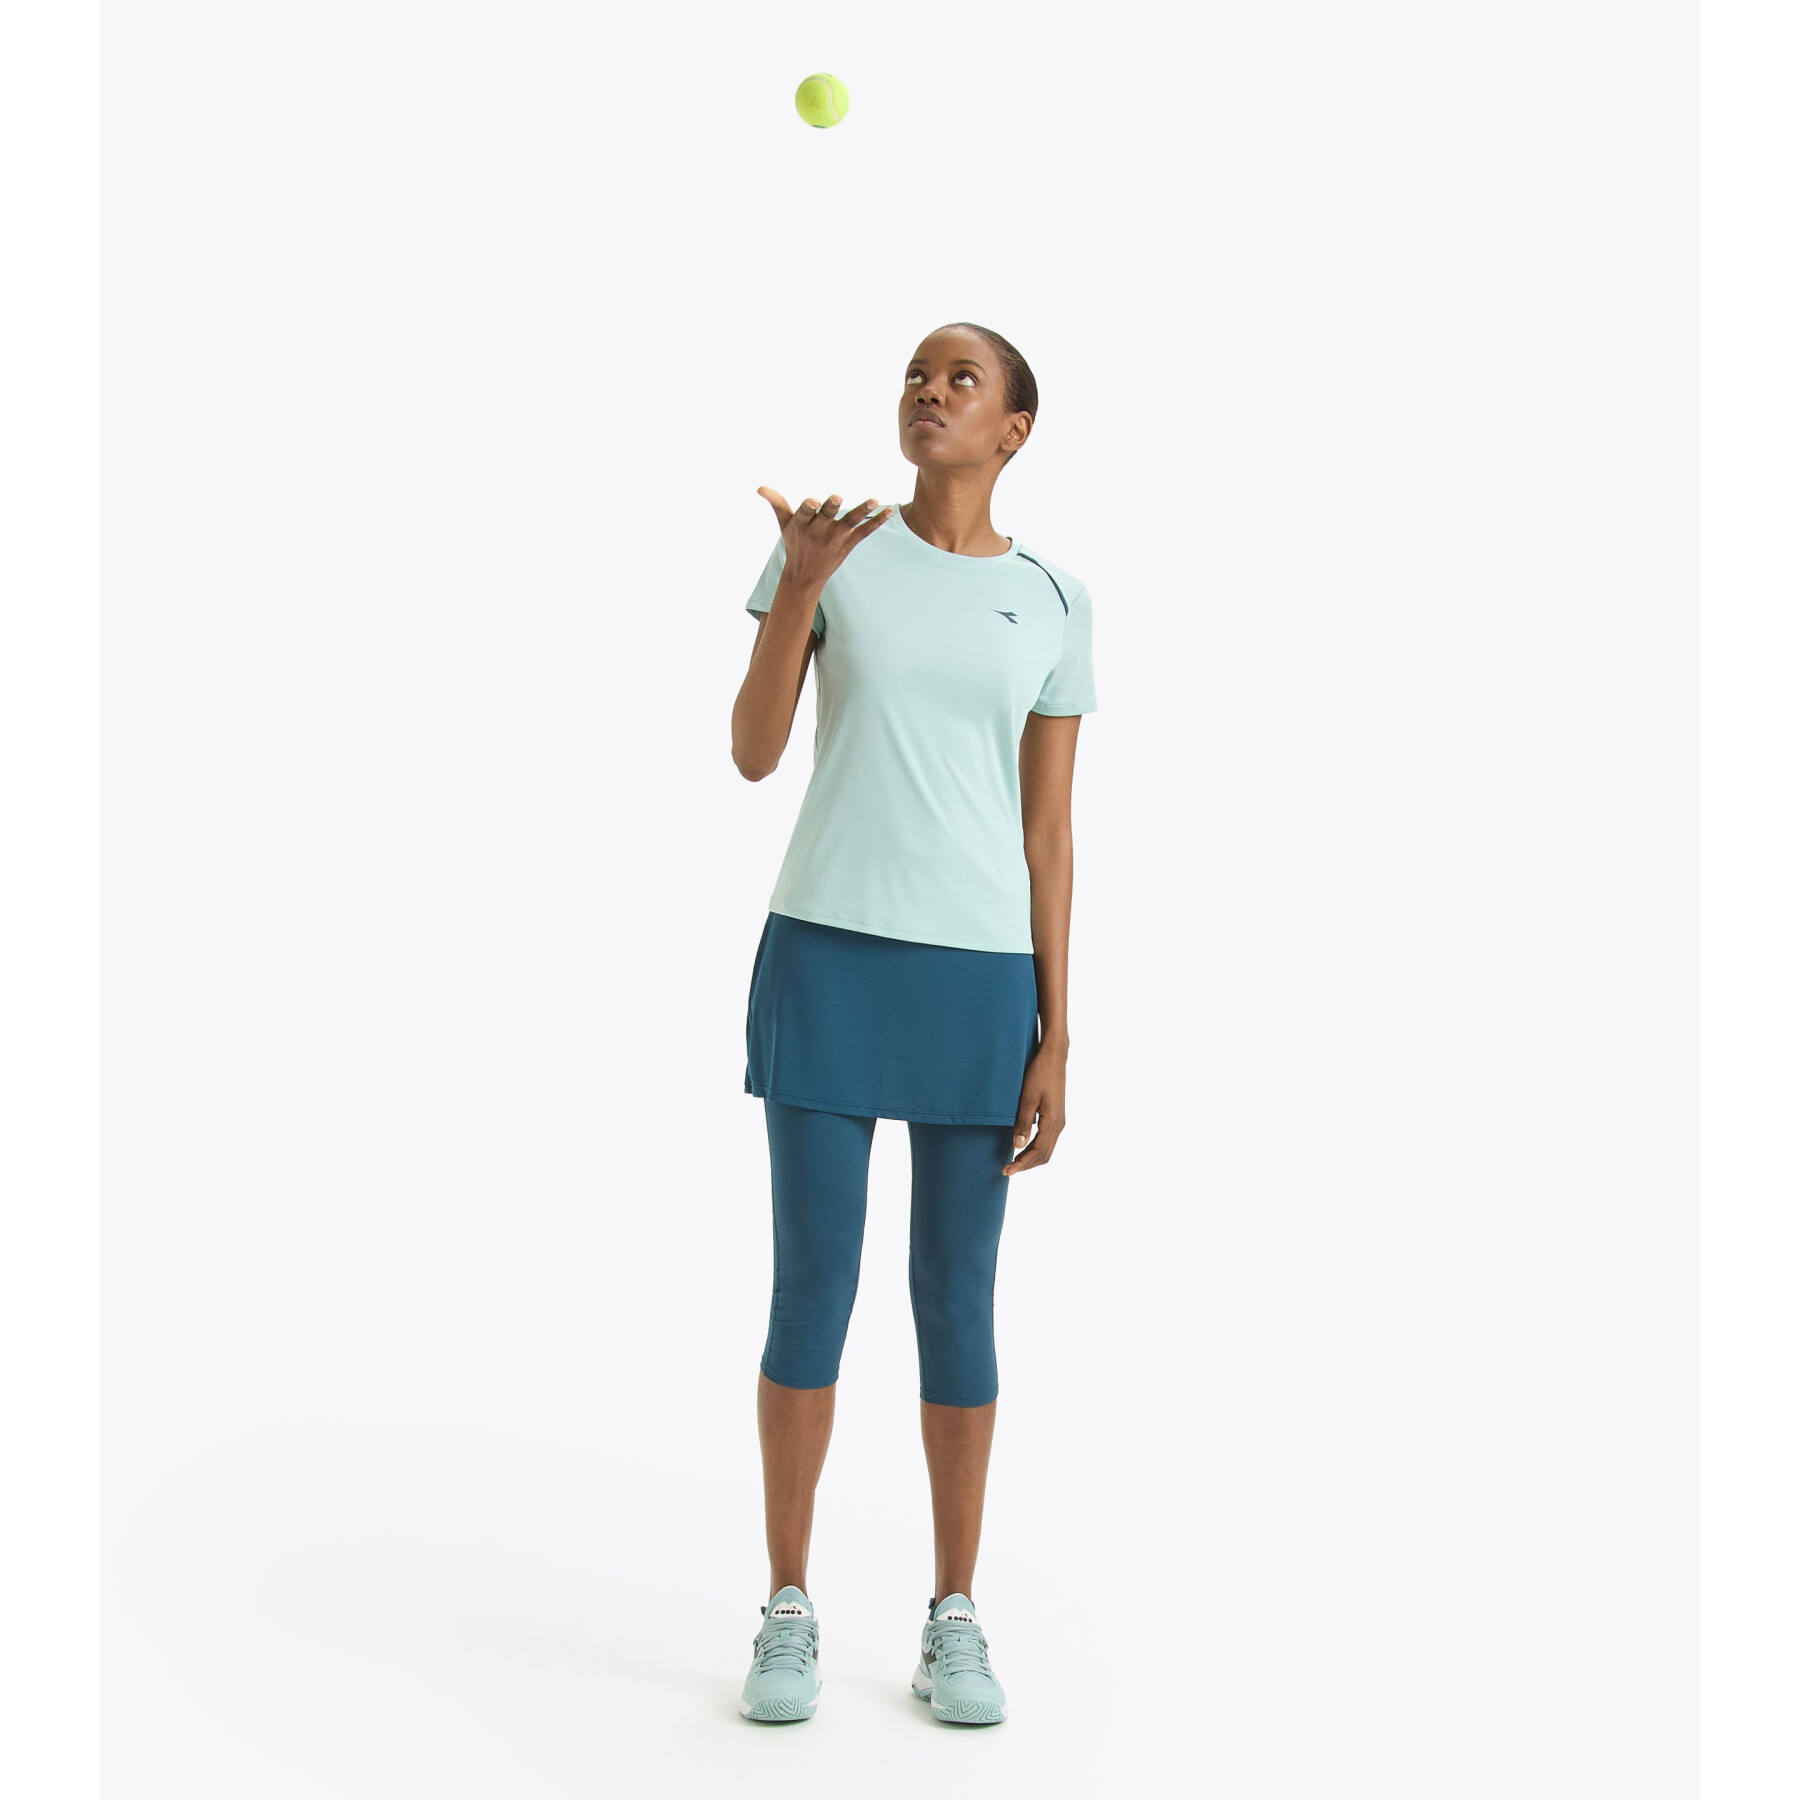 Women's tennis skirt-legging Diadora Power